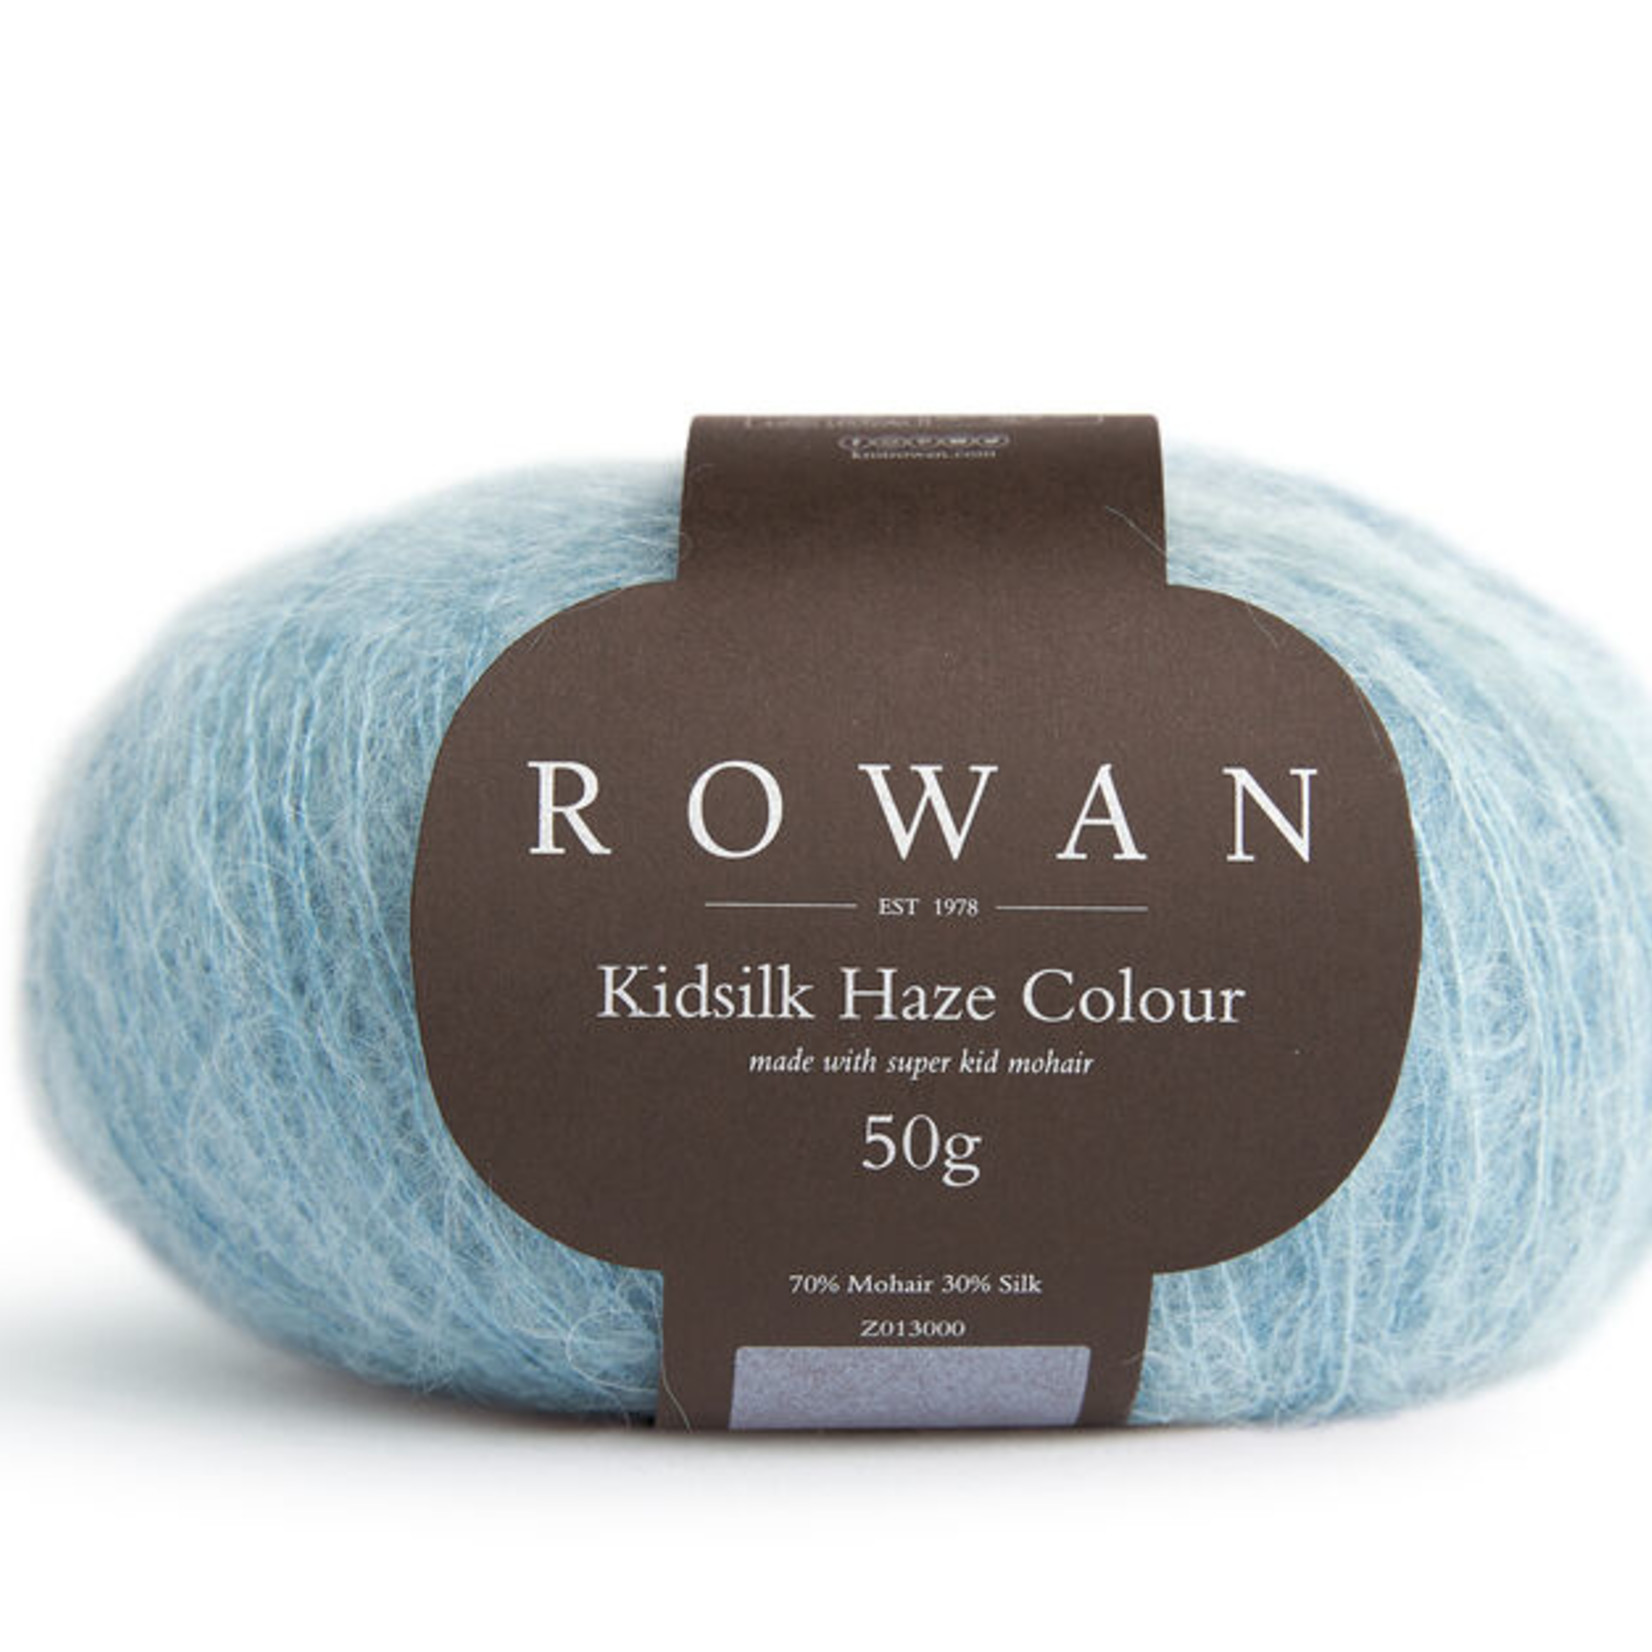 Rowan RN KSH Colour